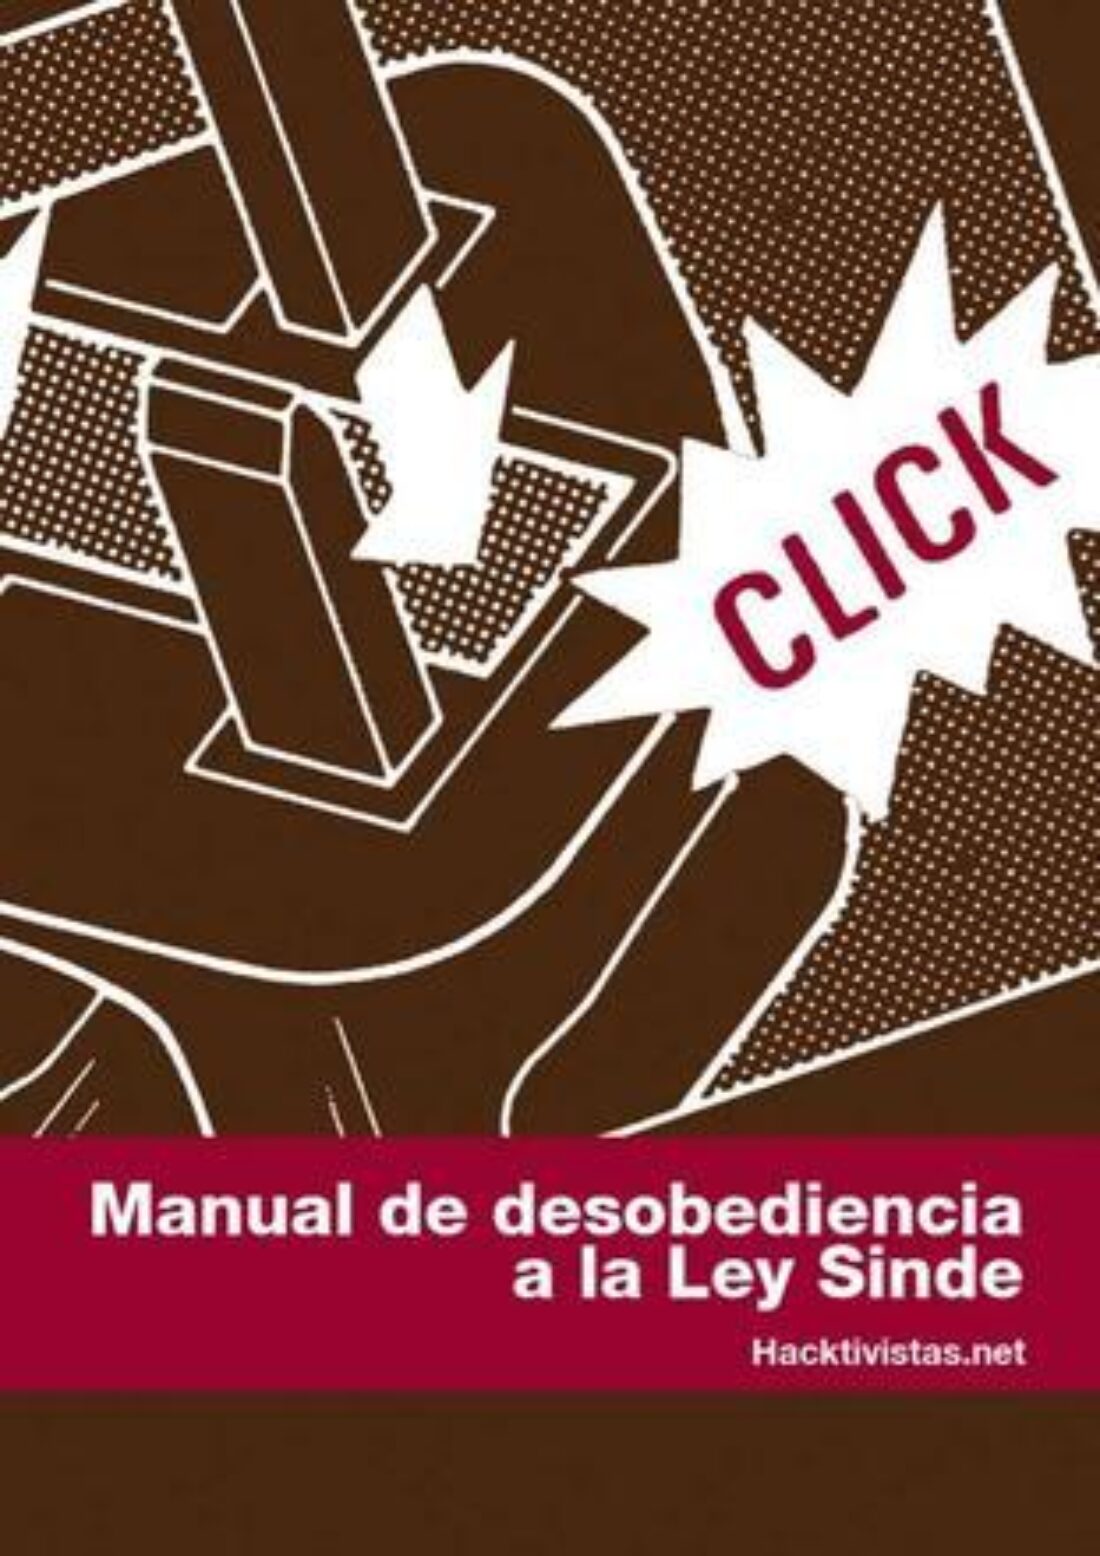 Madrid: Presentación de «Manual de desobediencia a la Ley Sinde»